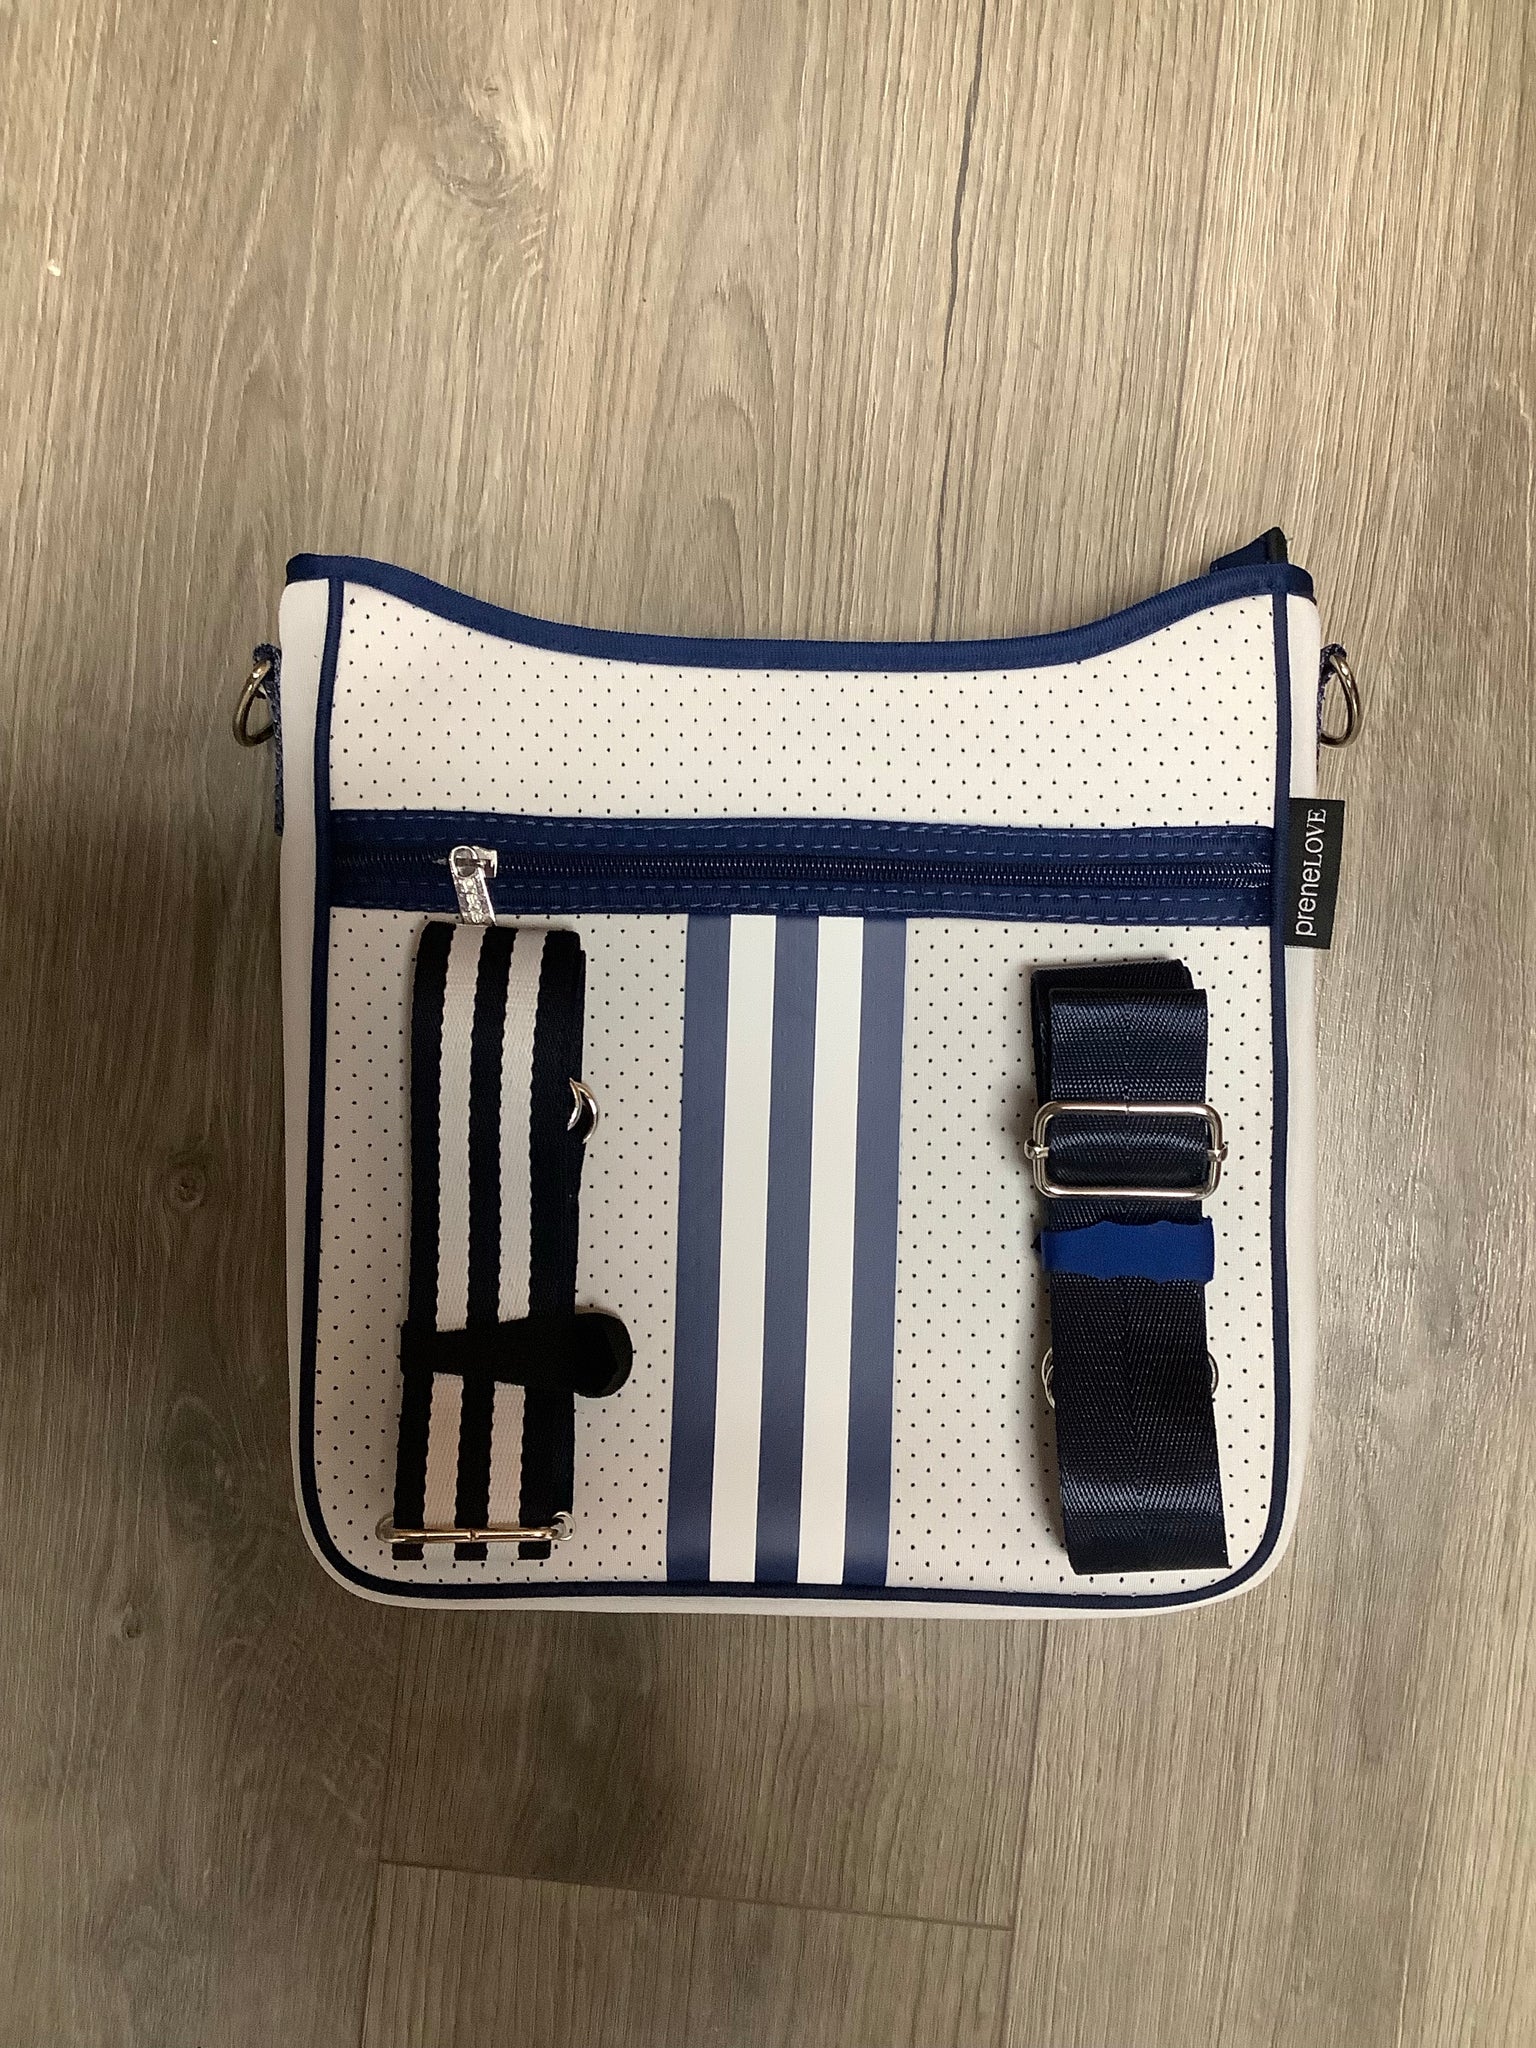 White/Navy Stripe Neoprene Messenger Bag